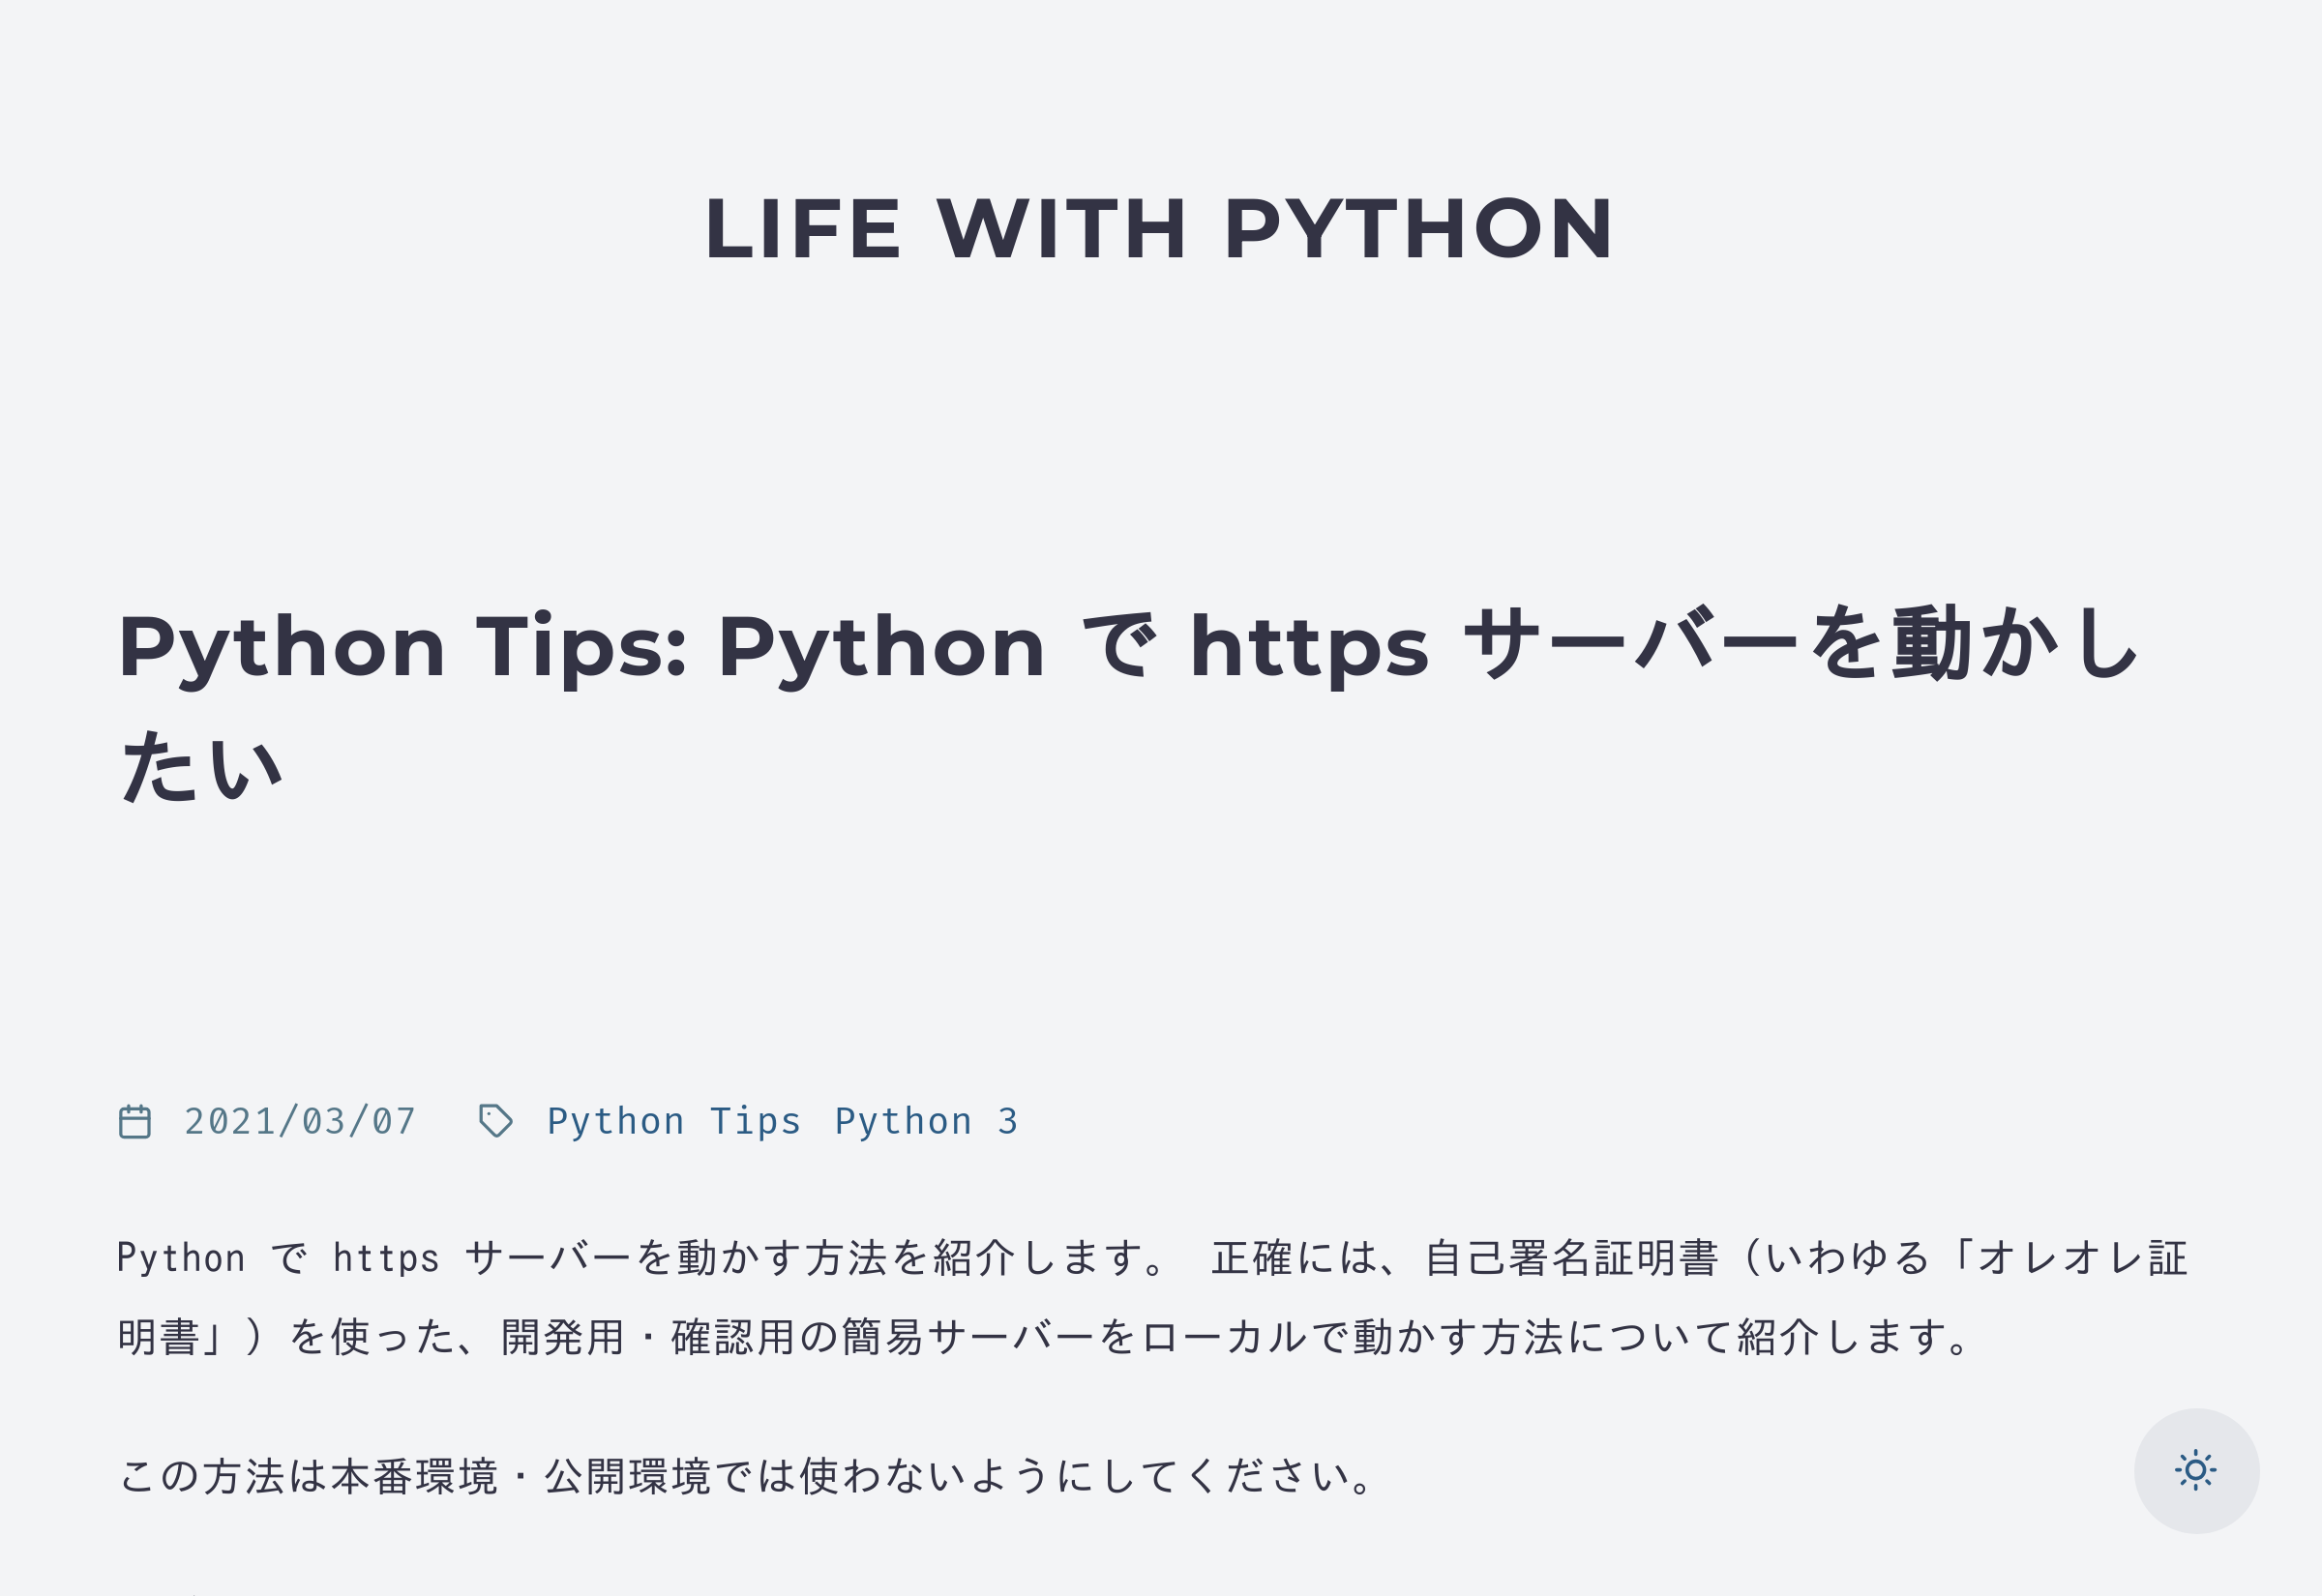 Python Tips: Python で https サーバーを動かしたい - Life with Python